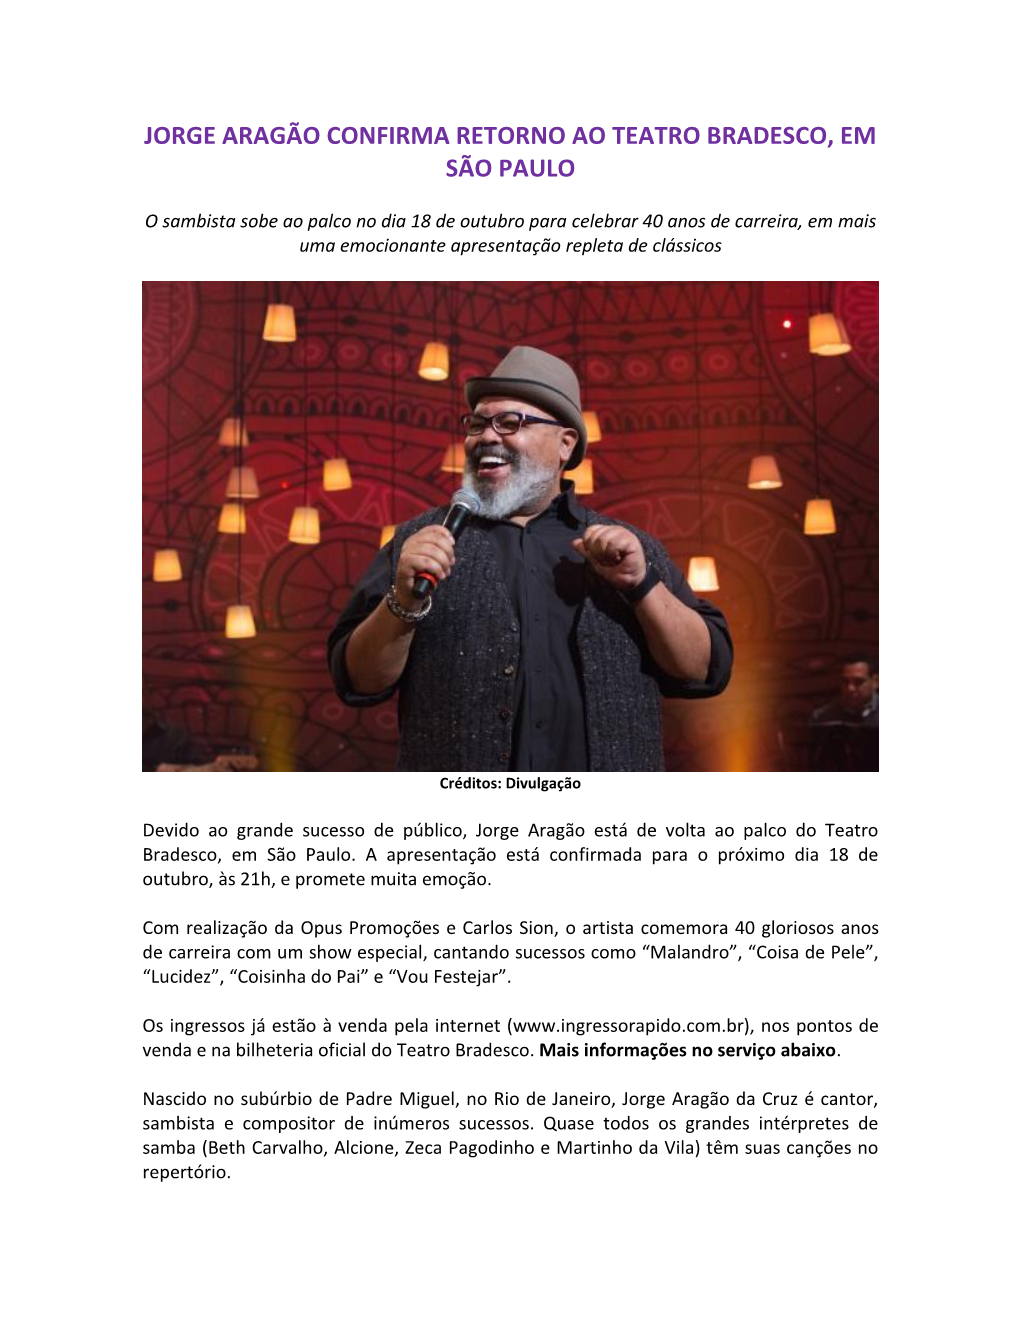 Jorge Aragão Confirma Retorno Ao Teatro Bradesco, Em São Paulo